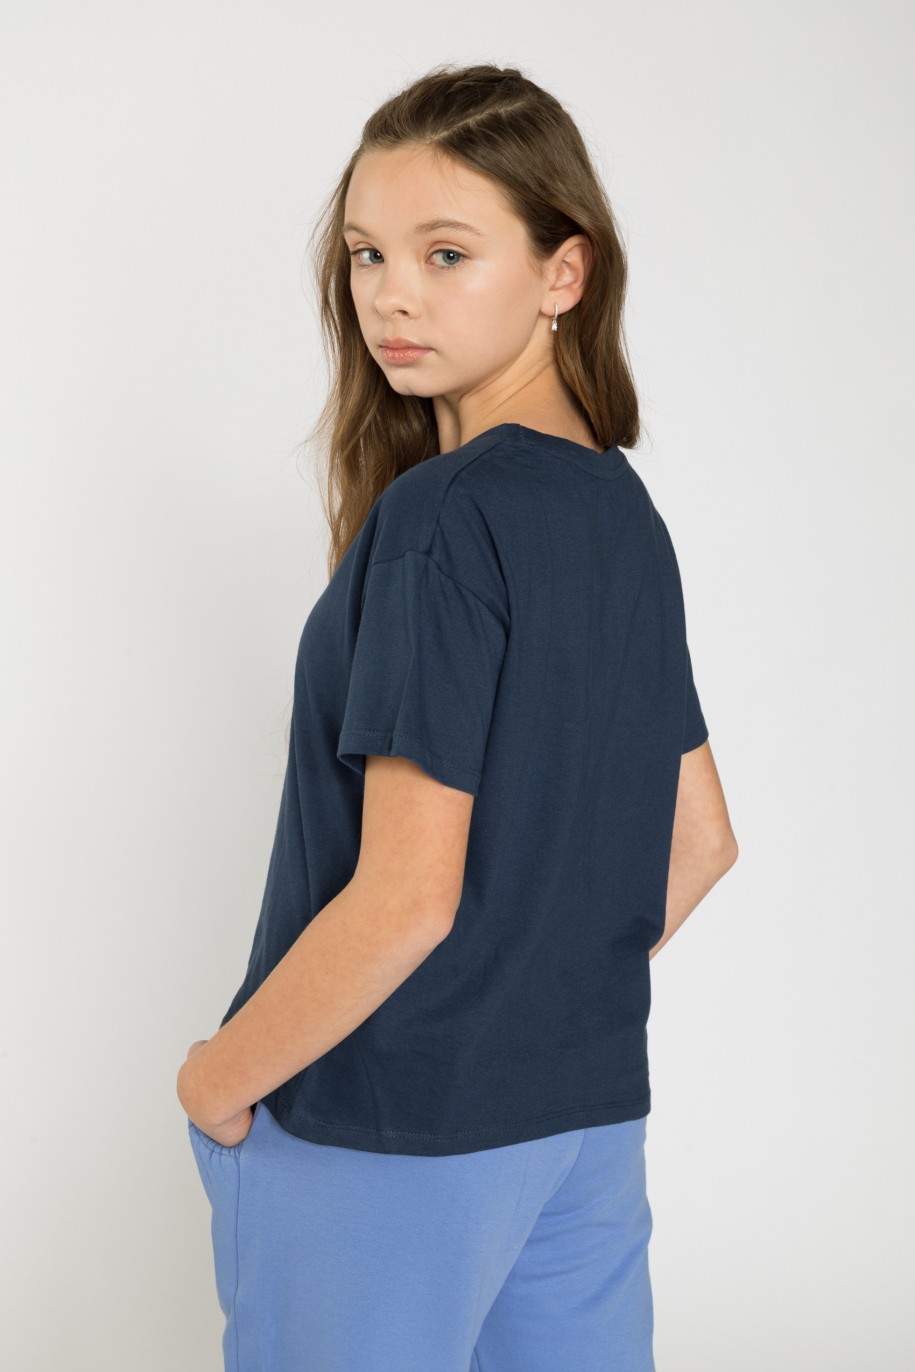 Granatowy t-shirt dla dziewczyny - 31855